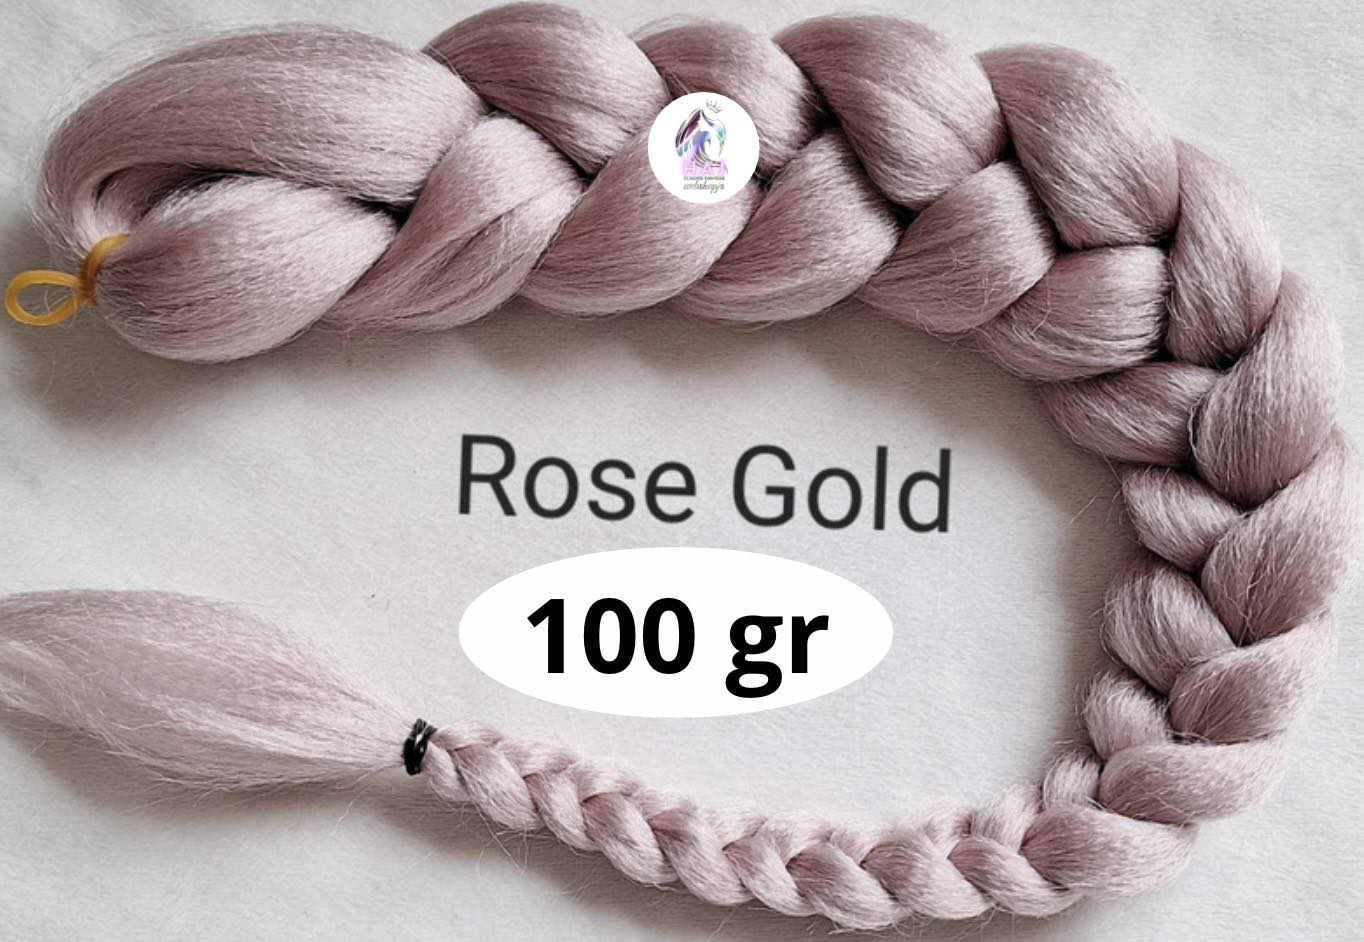 Rose Gold 100 gr - 1.700 Ft